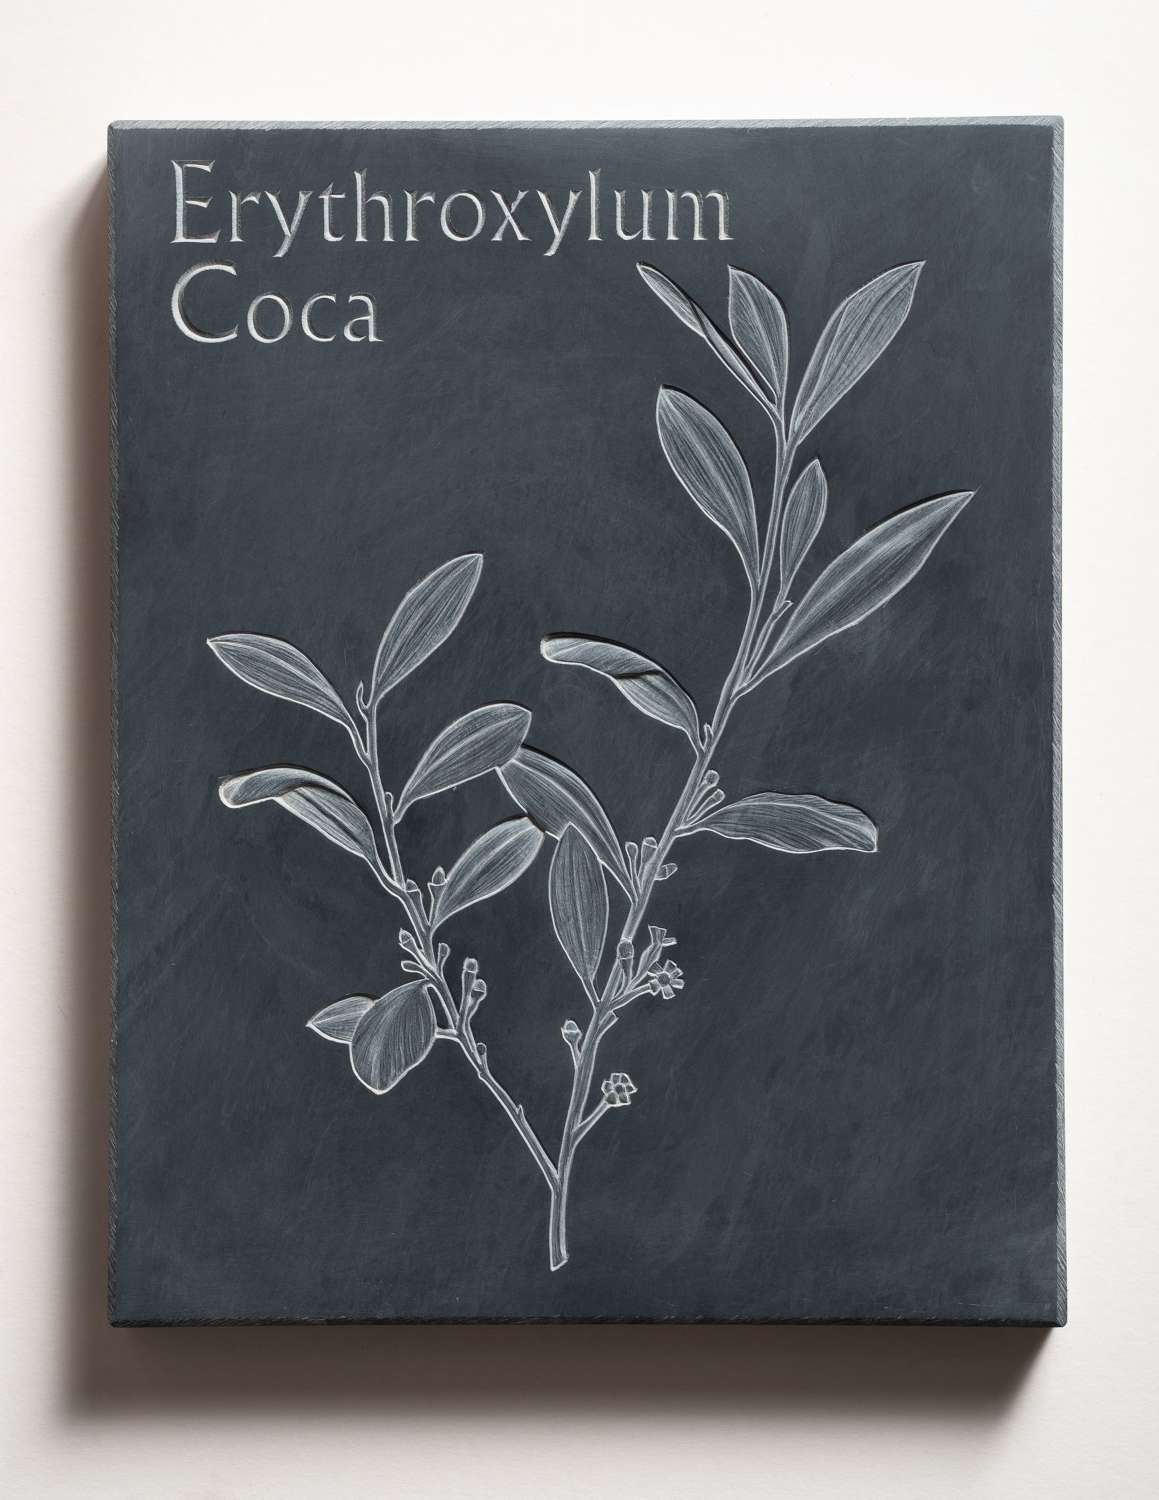 Tracy Steel. Erythroxylum Coca - Cocaine.